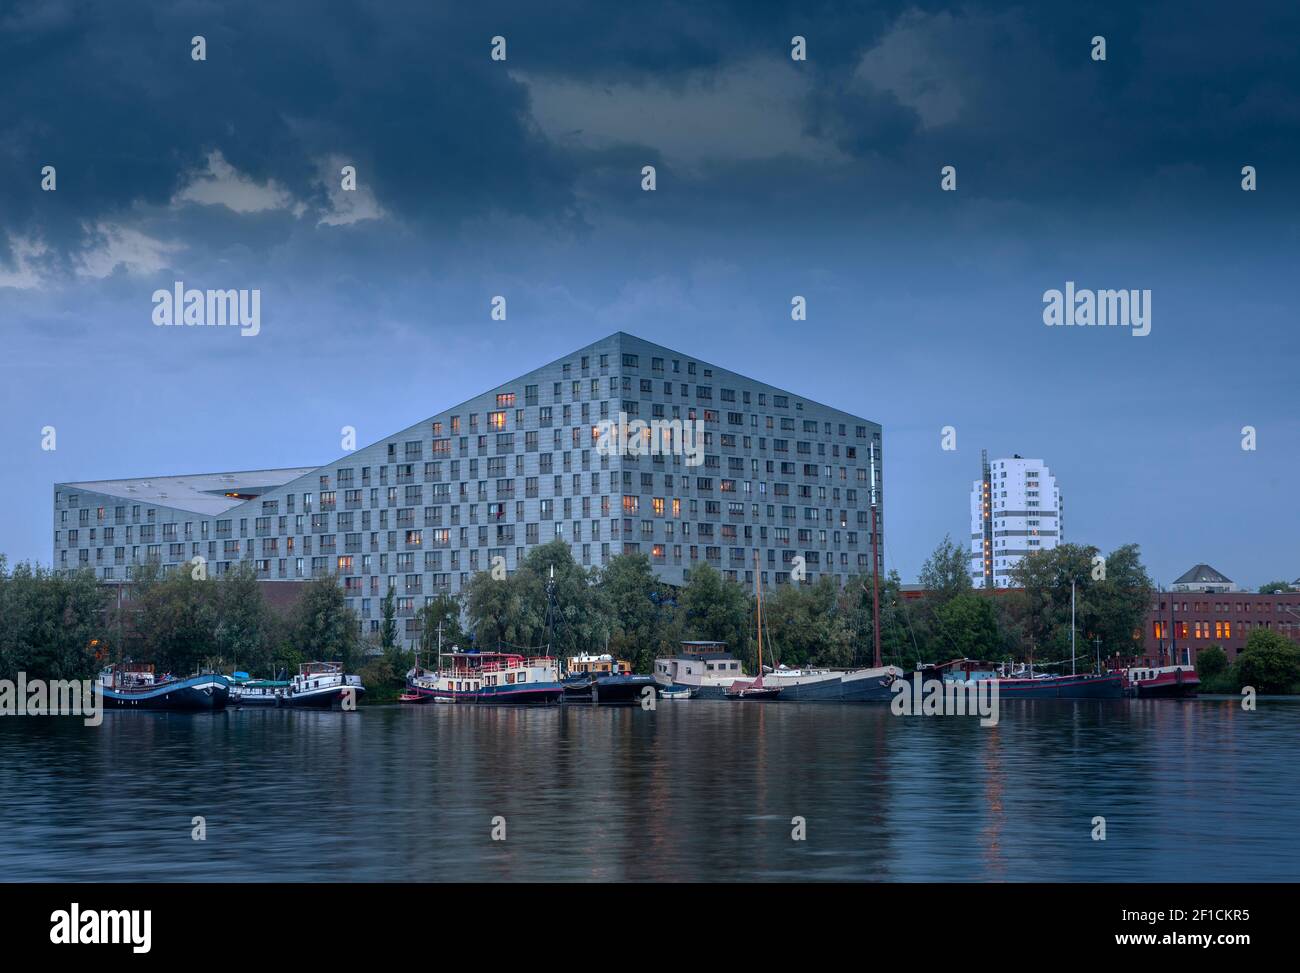 Bâtiment des baleines (architecte Frits Van Dongen, année: 2000) canal Ertshaven, bateaux, bâtiments éclairés, bateaux, Docklands de l'est, Amsterdam, Pays-Bas Banque D'Images